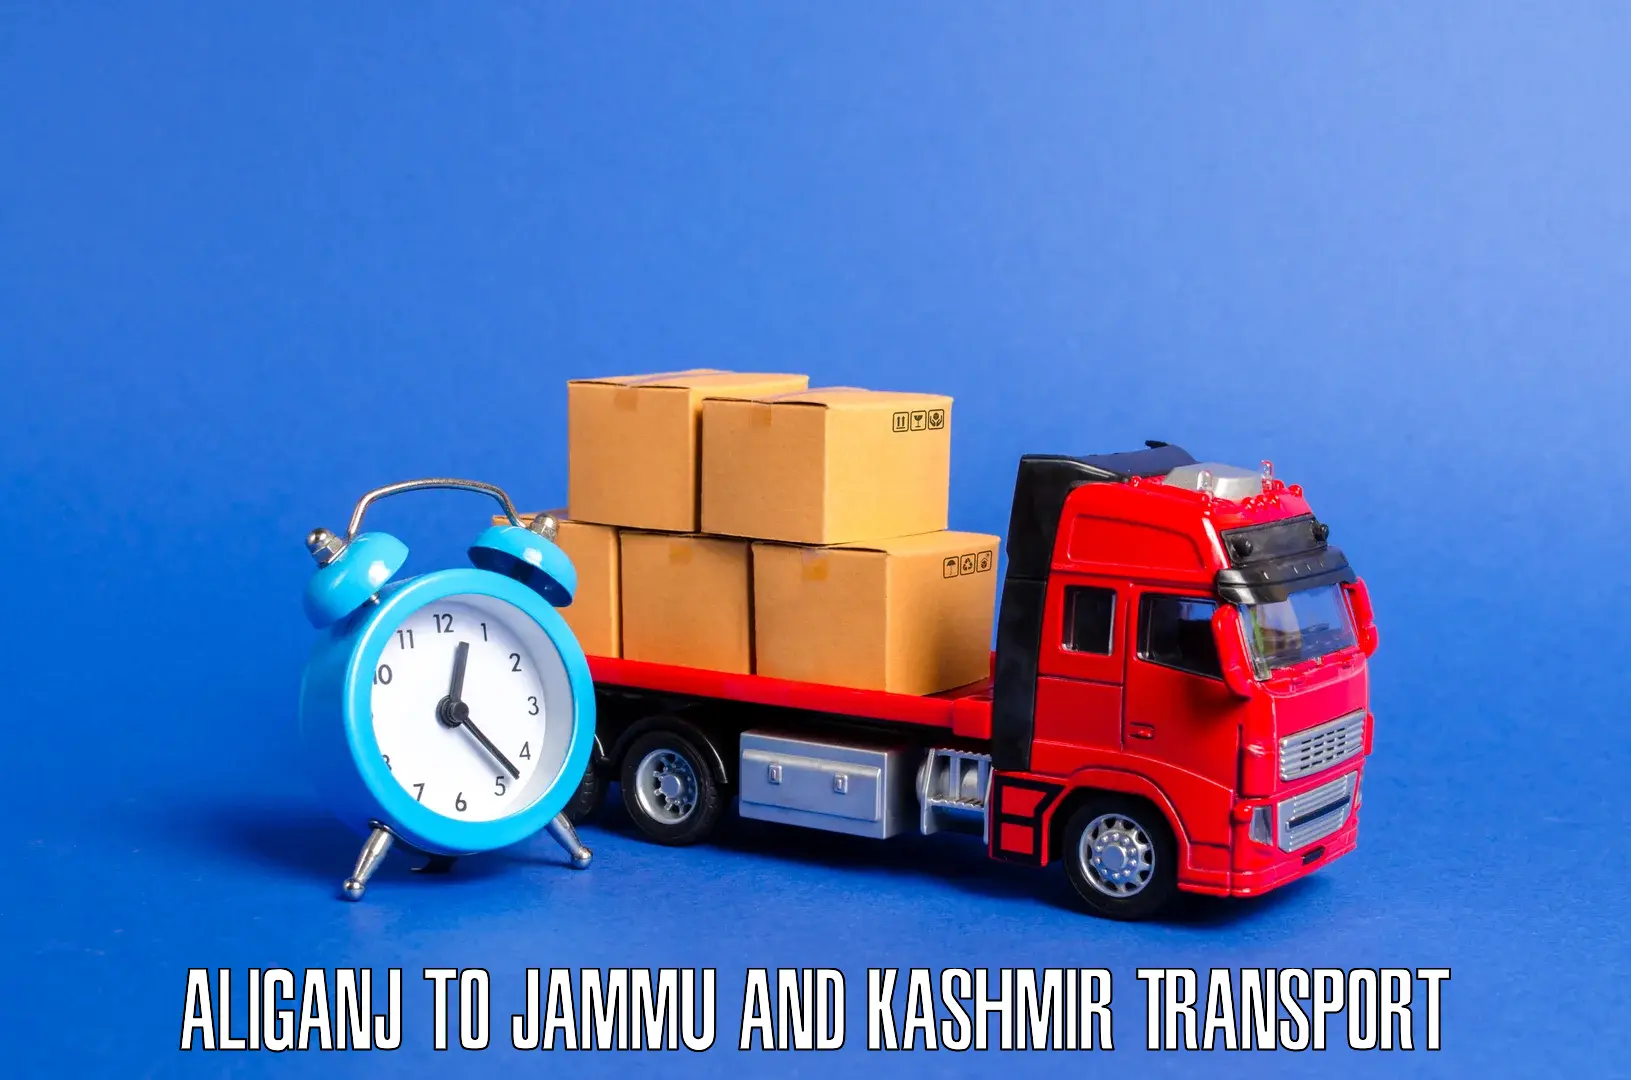 Part load transport service in India Aliganj to Kargil